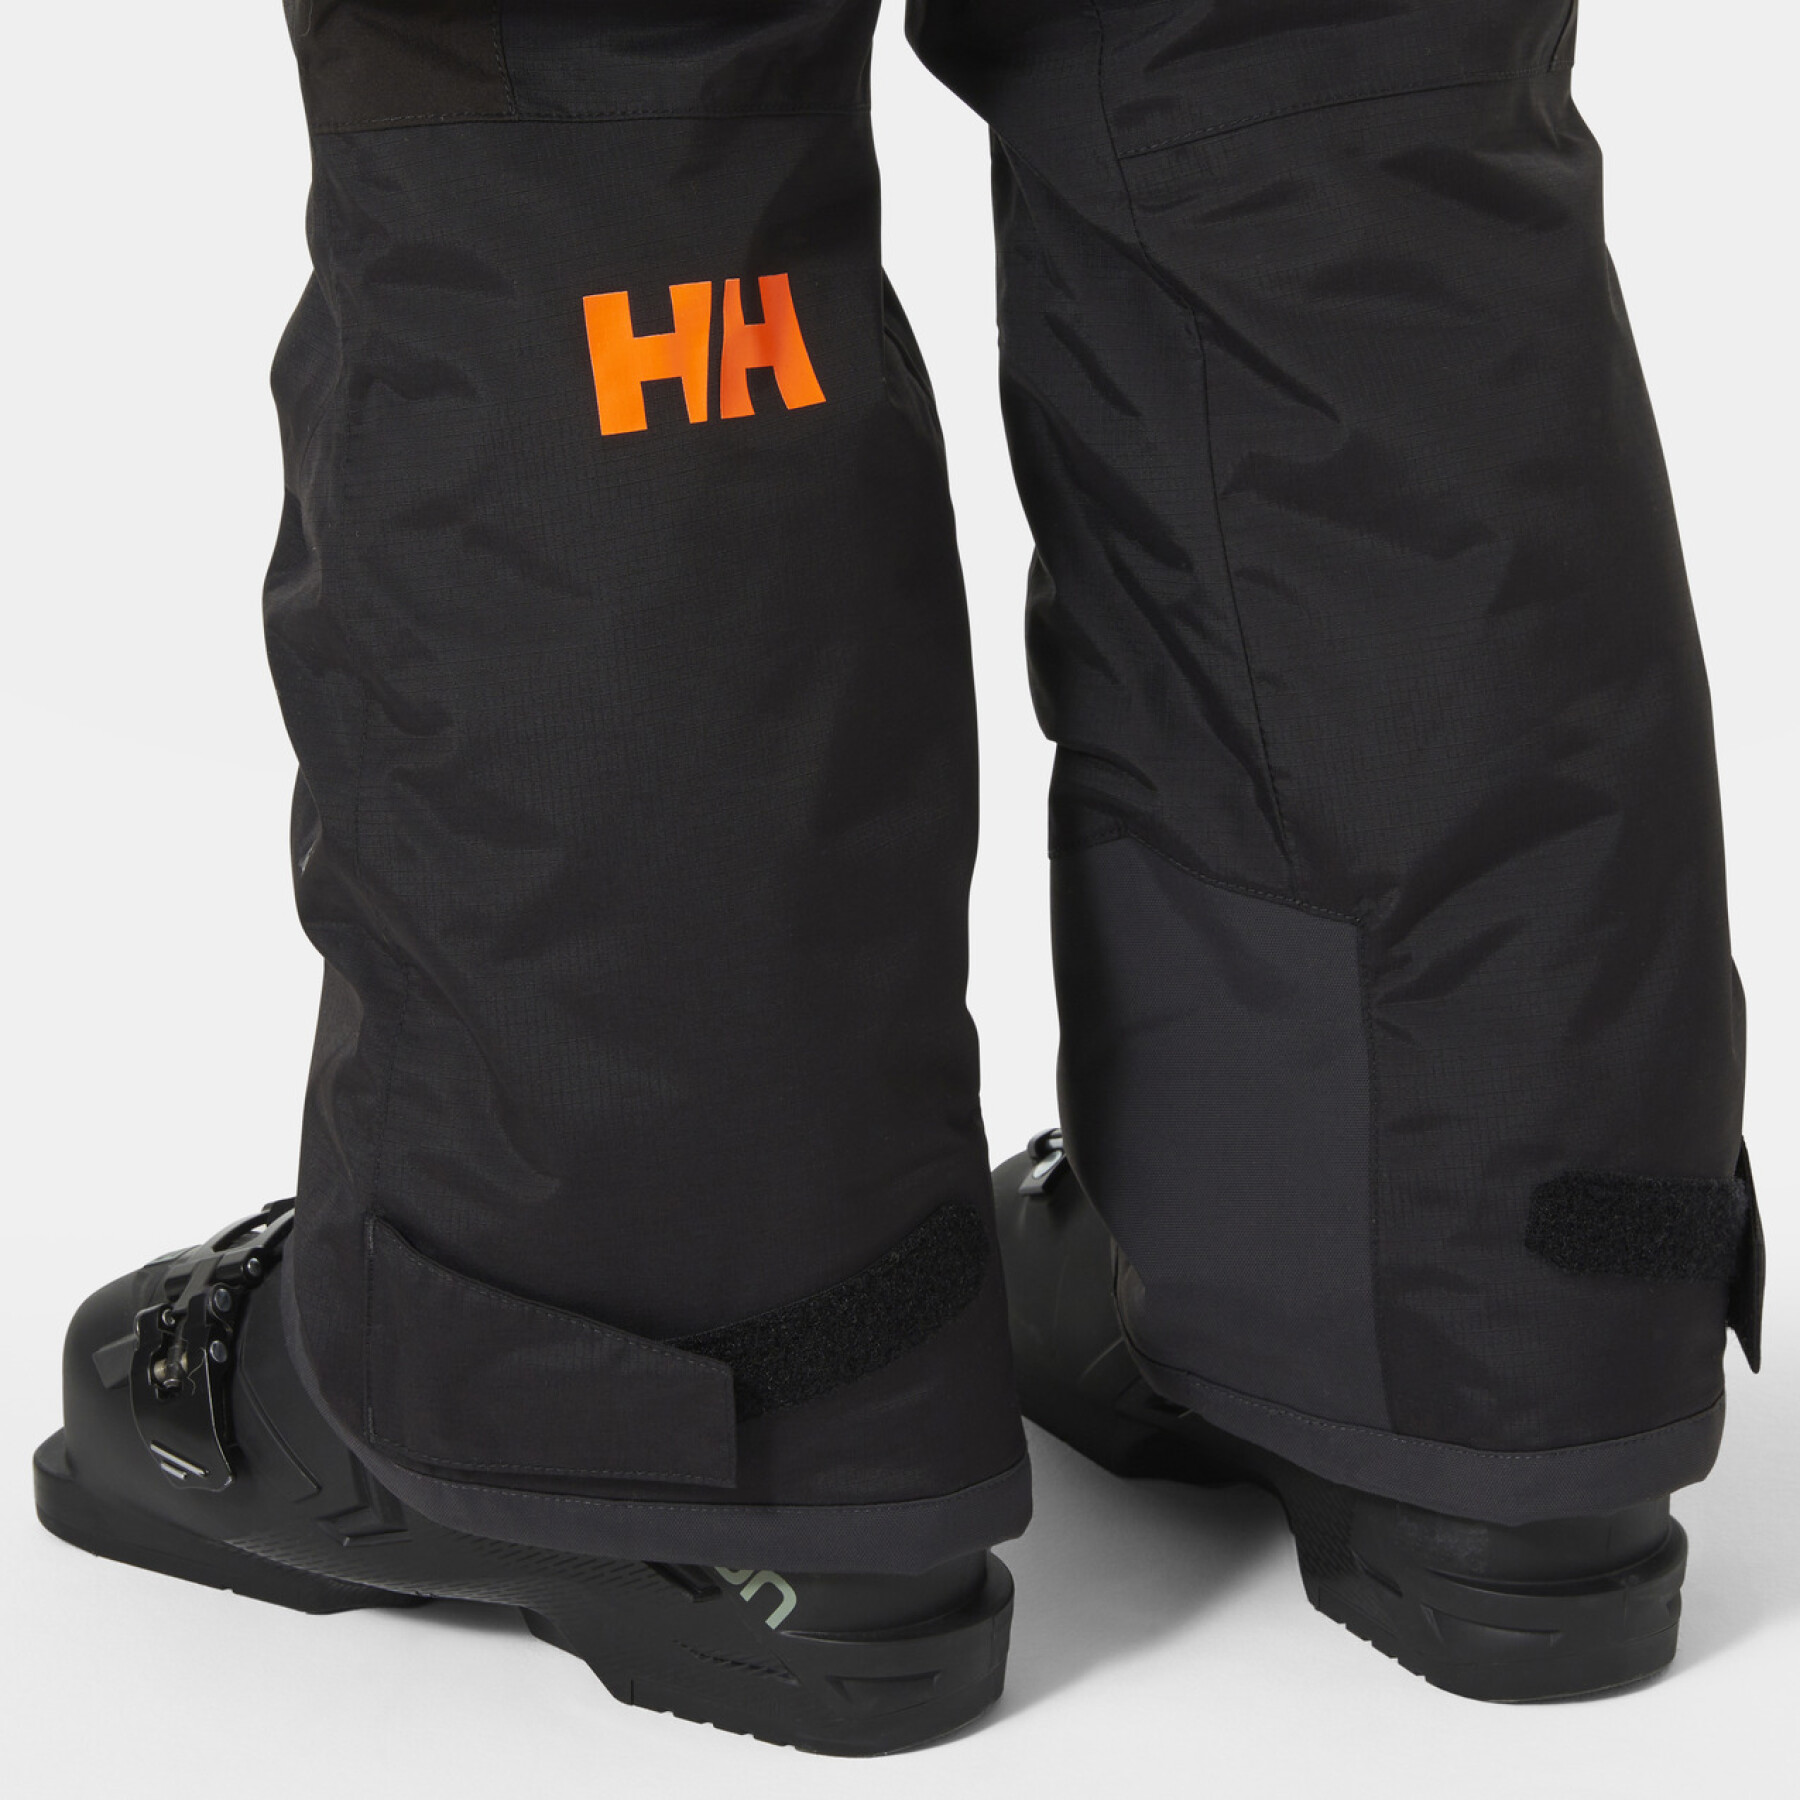 Pantaloni da sci per bambini Helly Hansen no limits 2.0